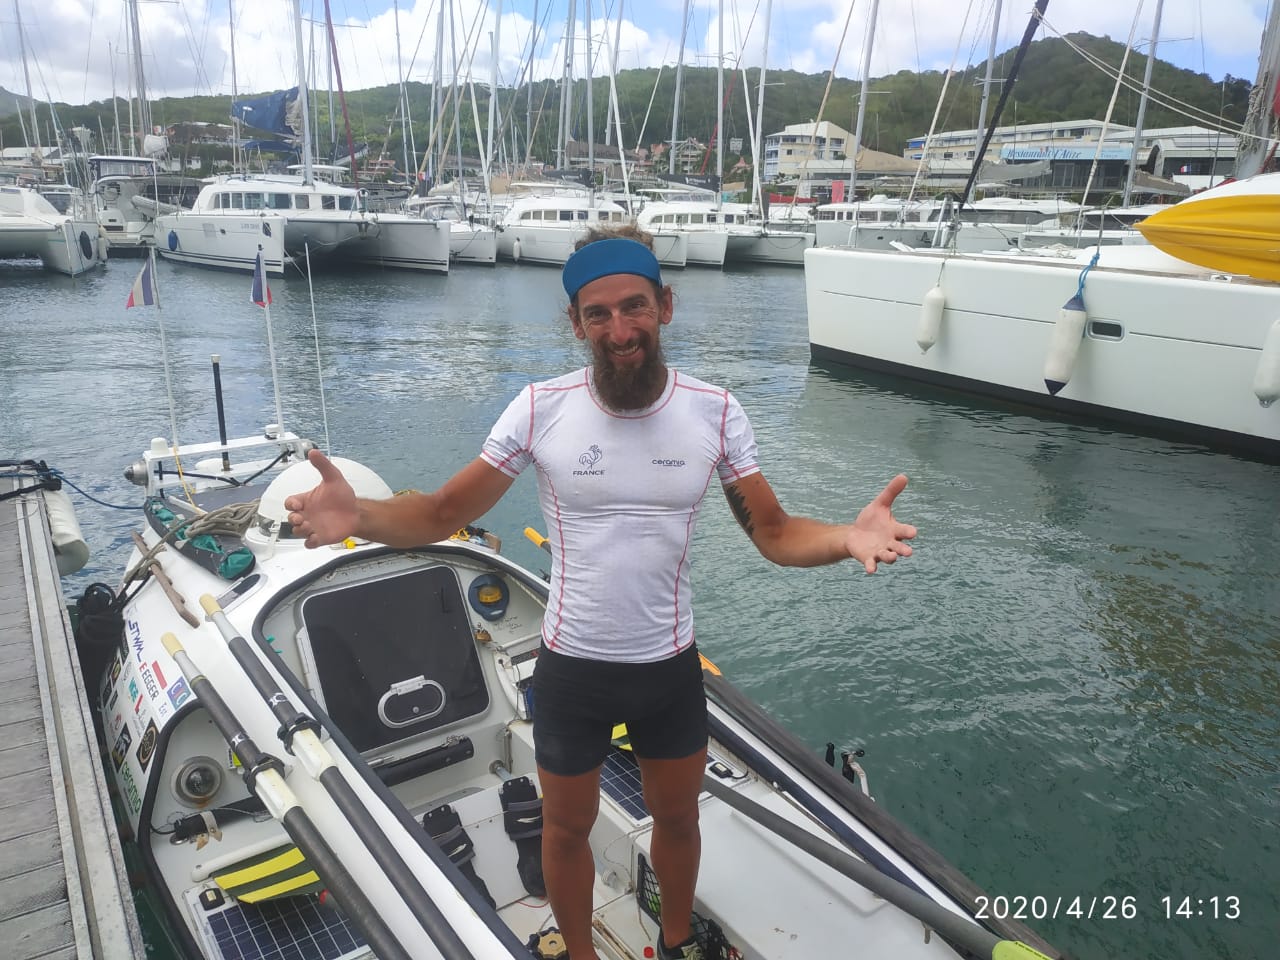     Stéphane Brogniart est arrivé au Marin après 72 jours en mer

